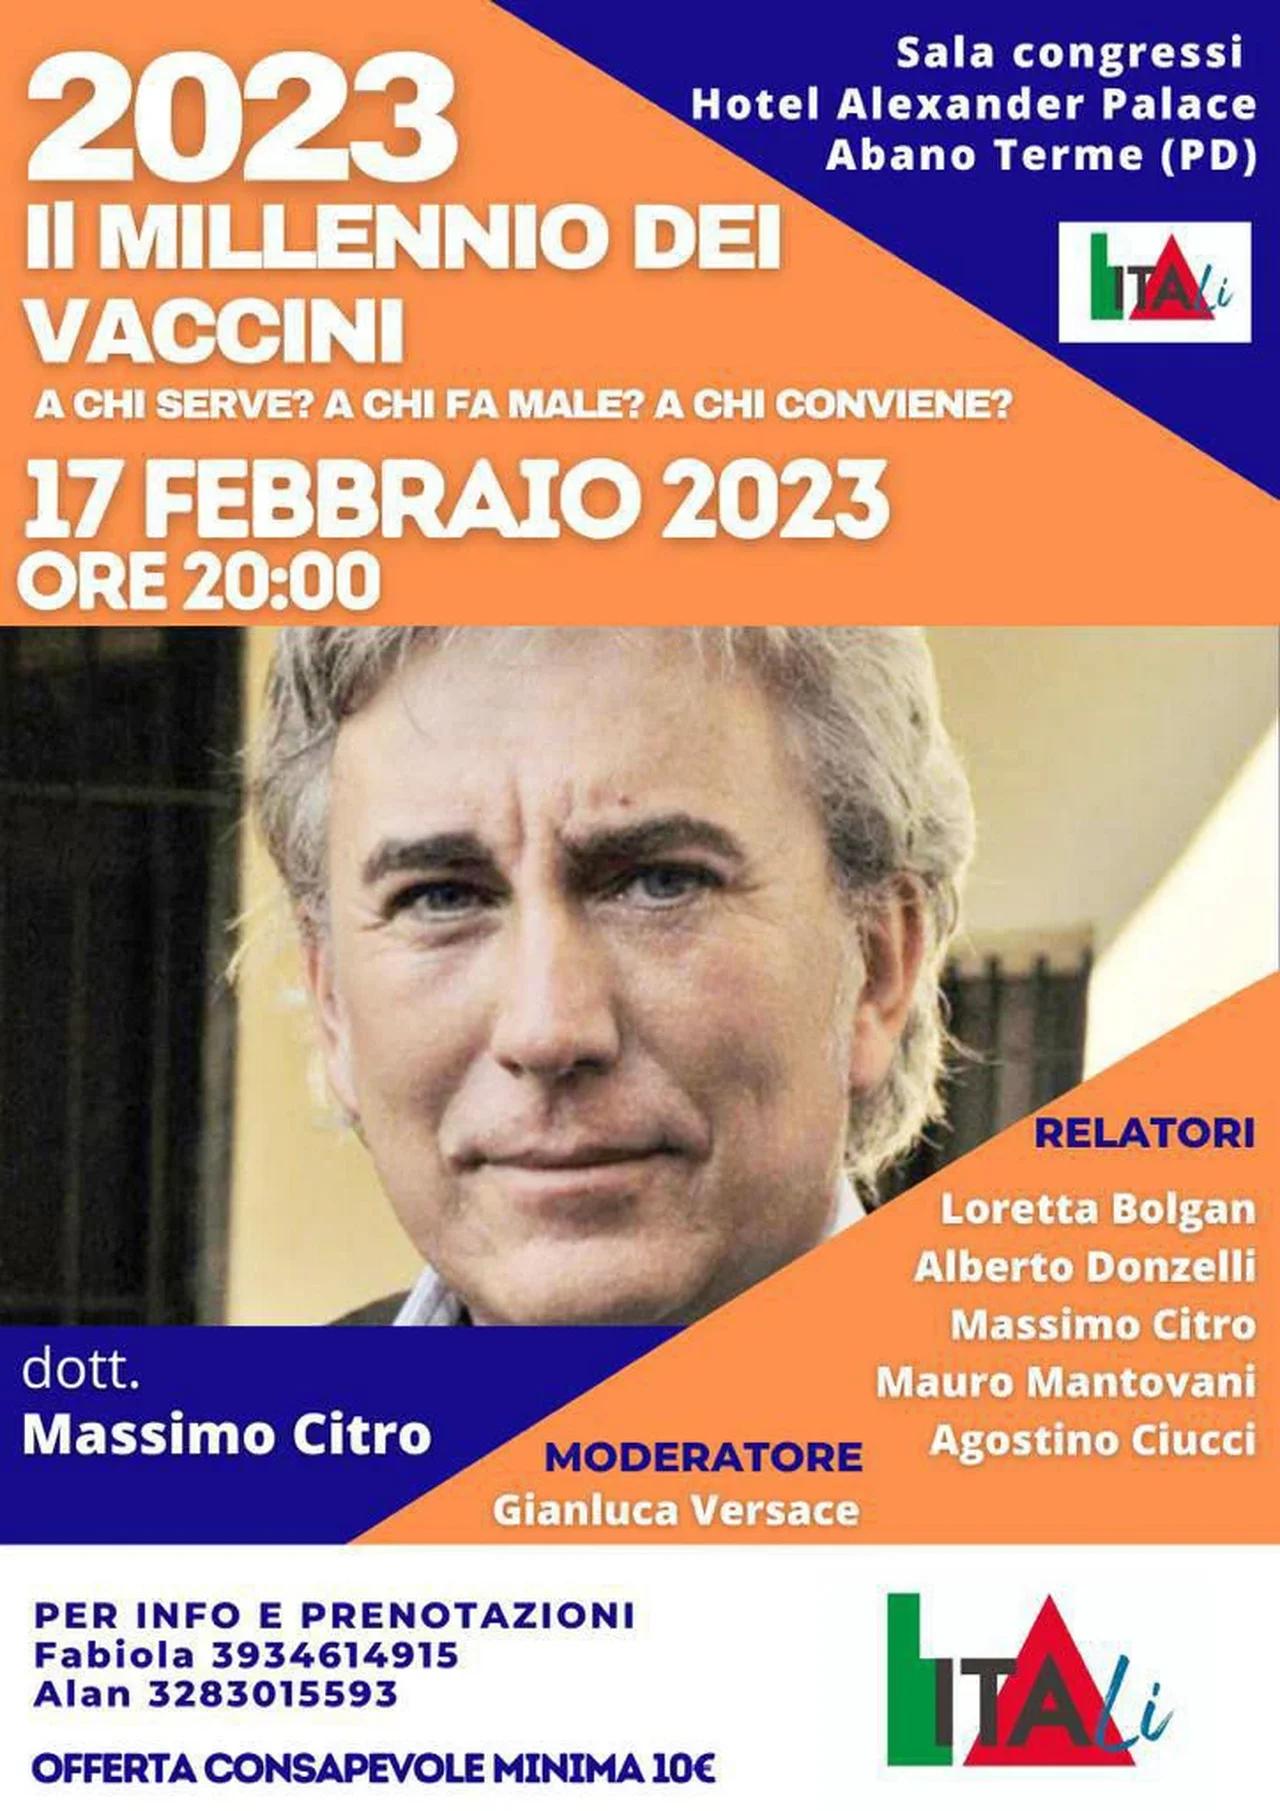 IL MILLENNIO DEI VACCINI - Abano Terme 17/02/23 - Dr. Massimo Citro ...